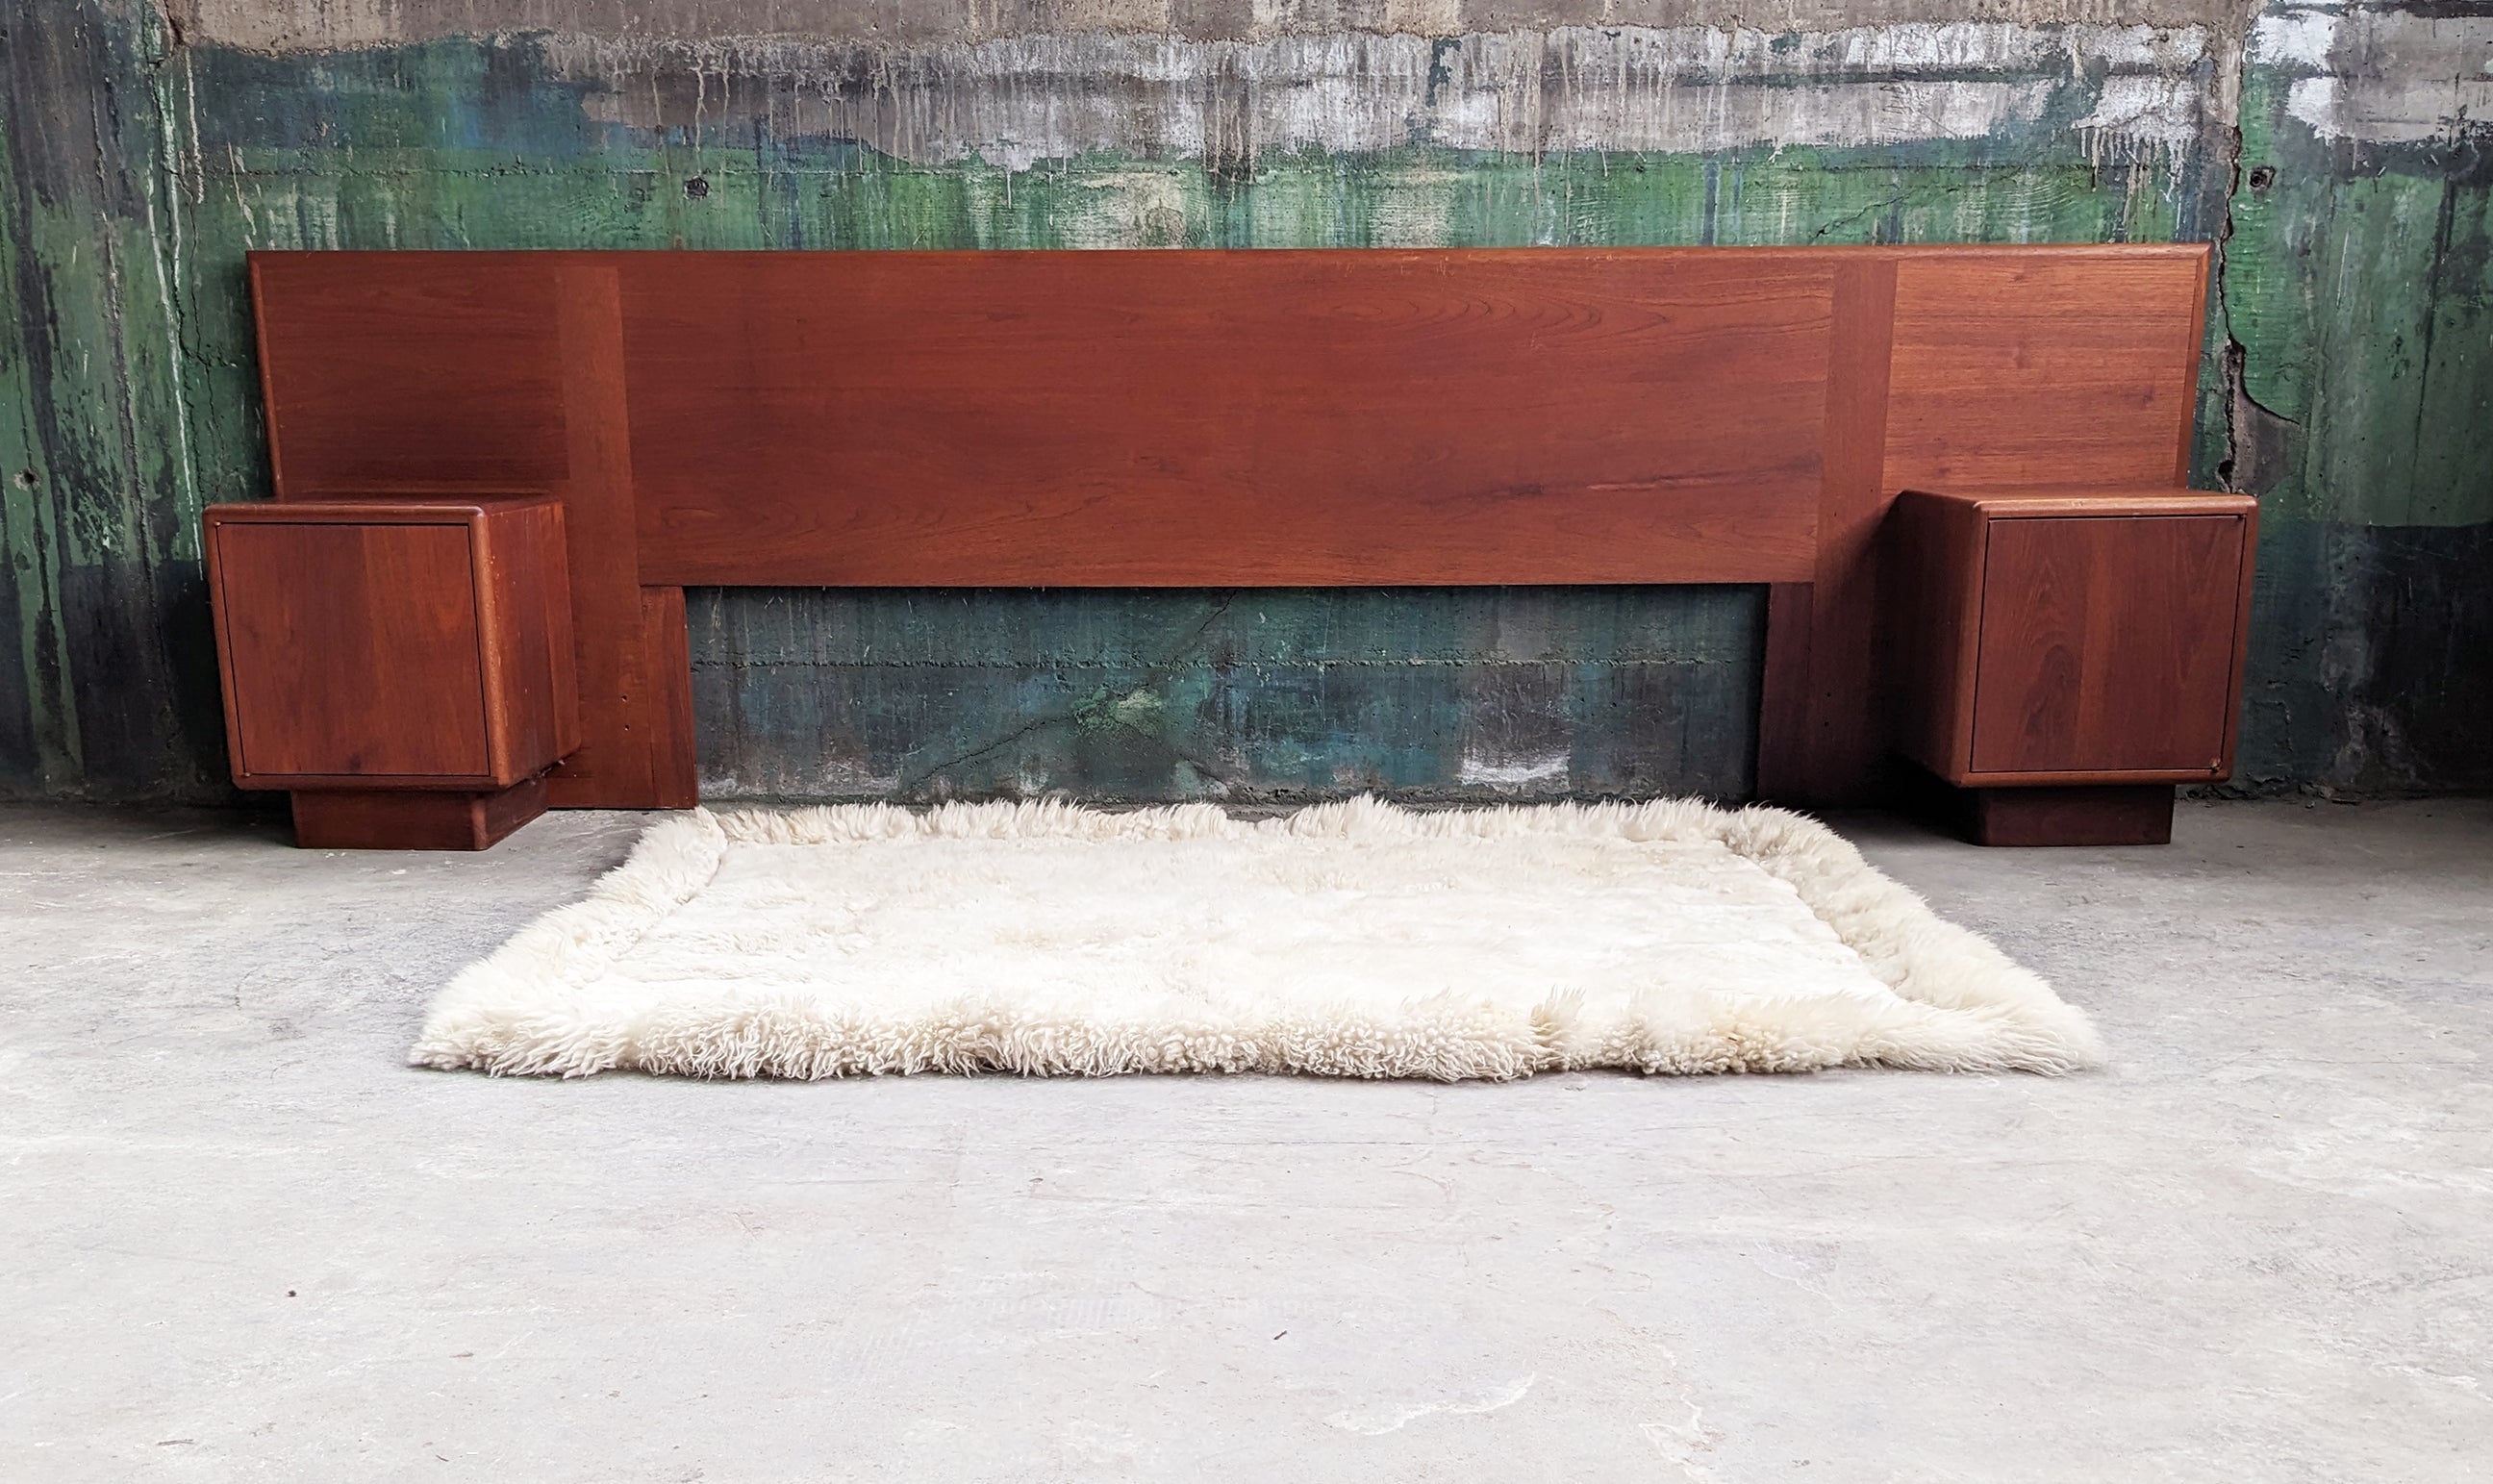 Très recherché Original Vintage Danish Modern Solid Teak Rosewood King Bed + Attachable Nightstands, made in Denmark, 1970s
Cadre de lit classique, intemporel et étonnant, prêt à personnaliser votre espace.

Cet ensemble de tête de lit et de tables